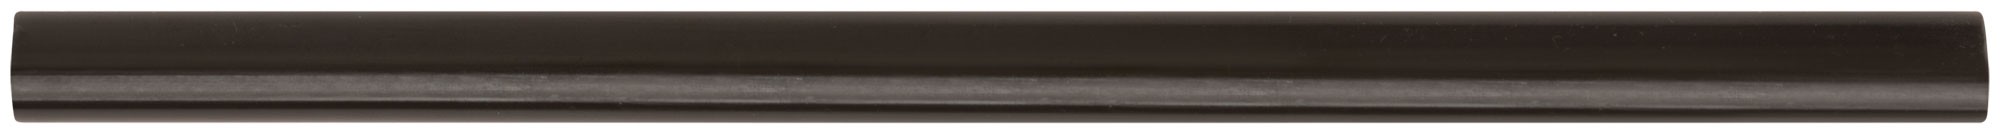 Стержни клеевые черные д.11 мм х 200 мм, 6 шт.